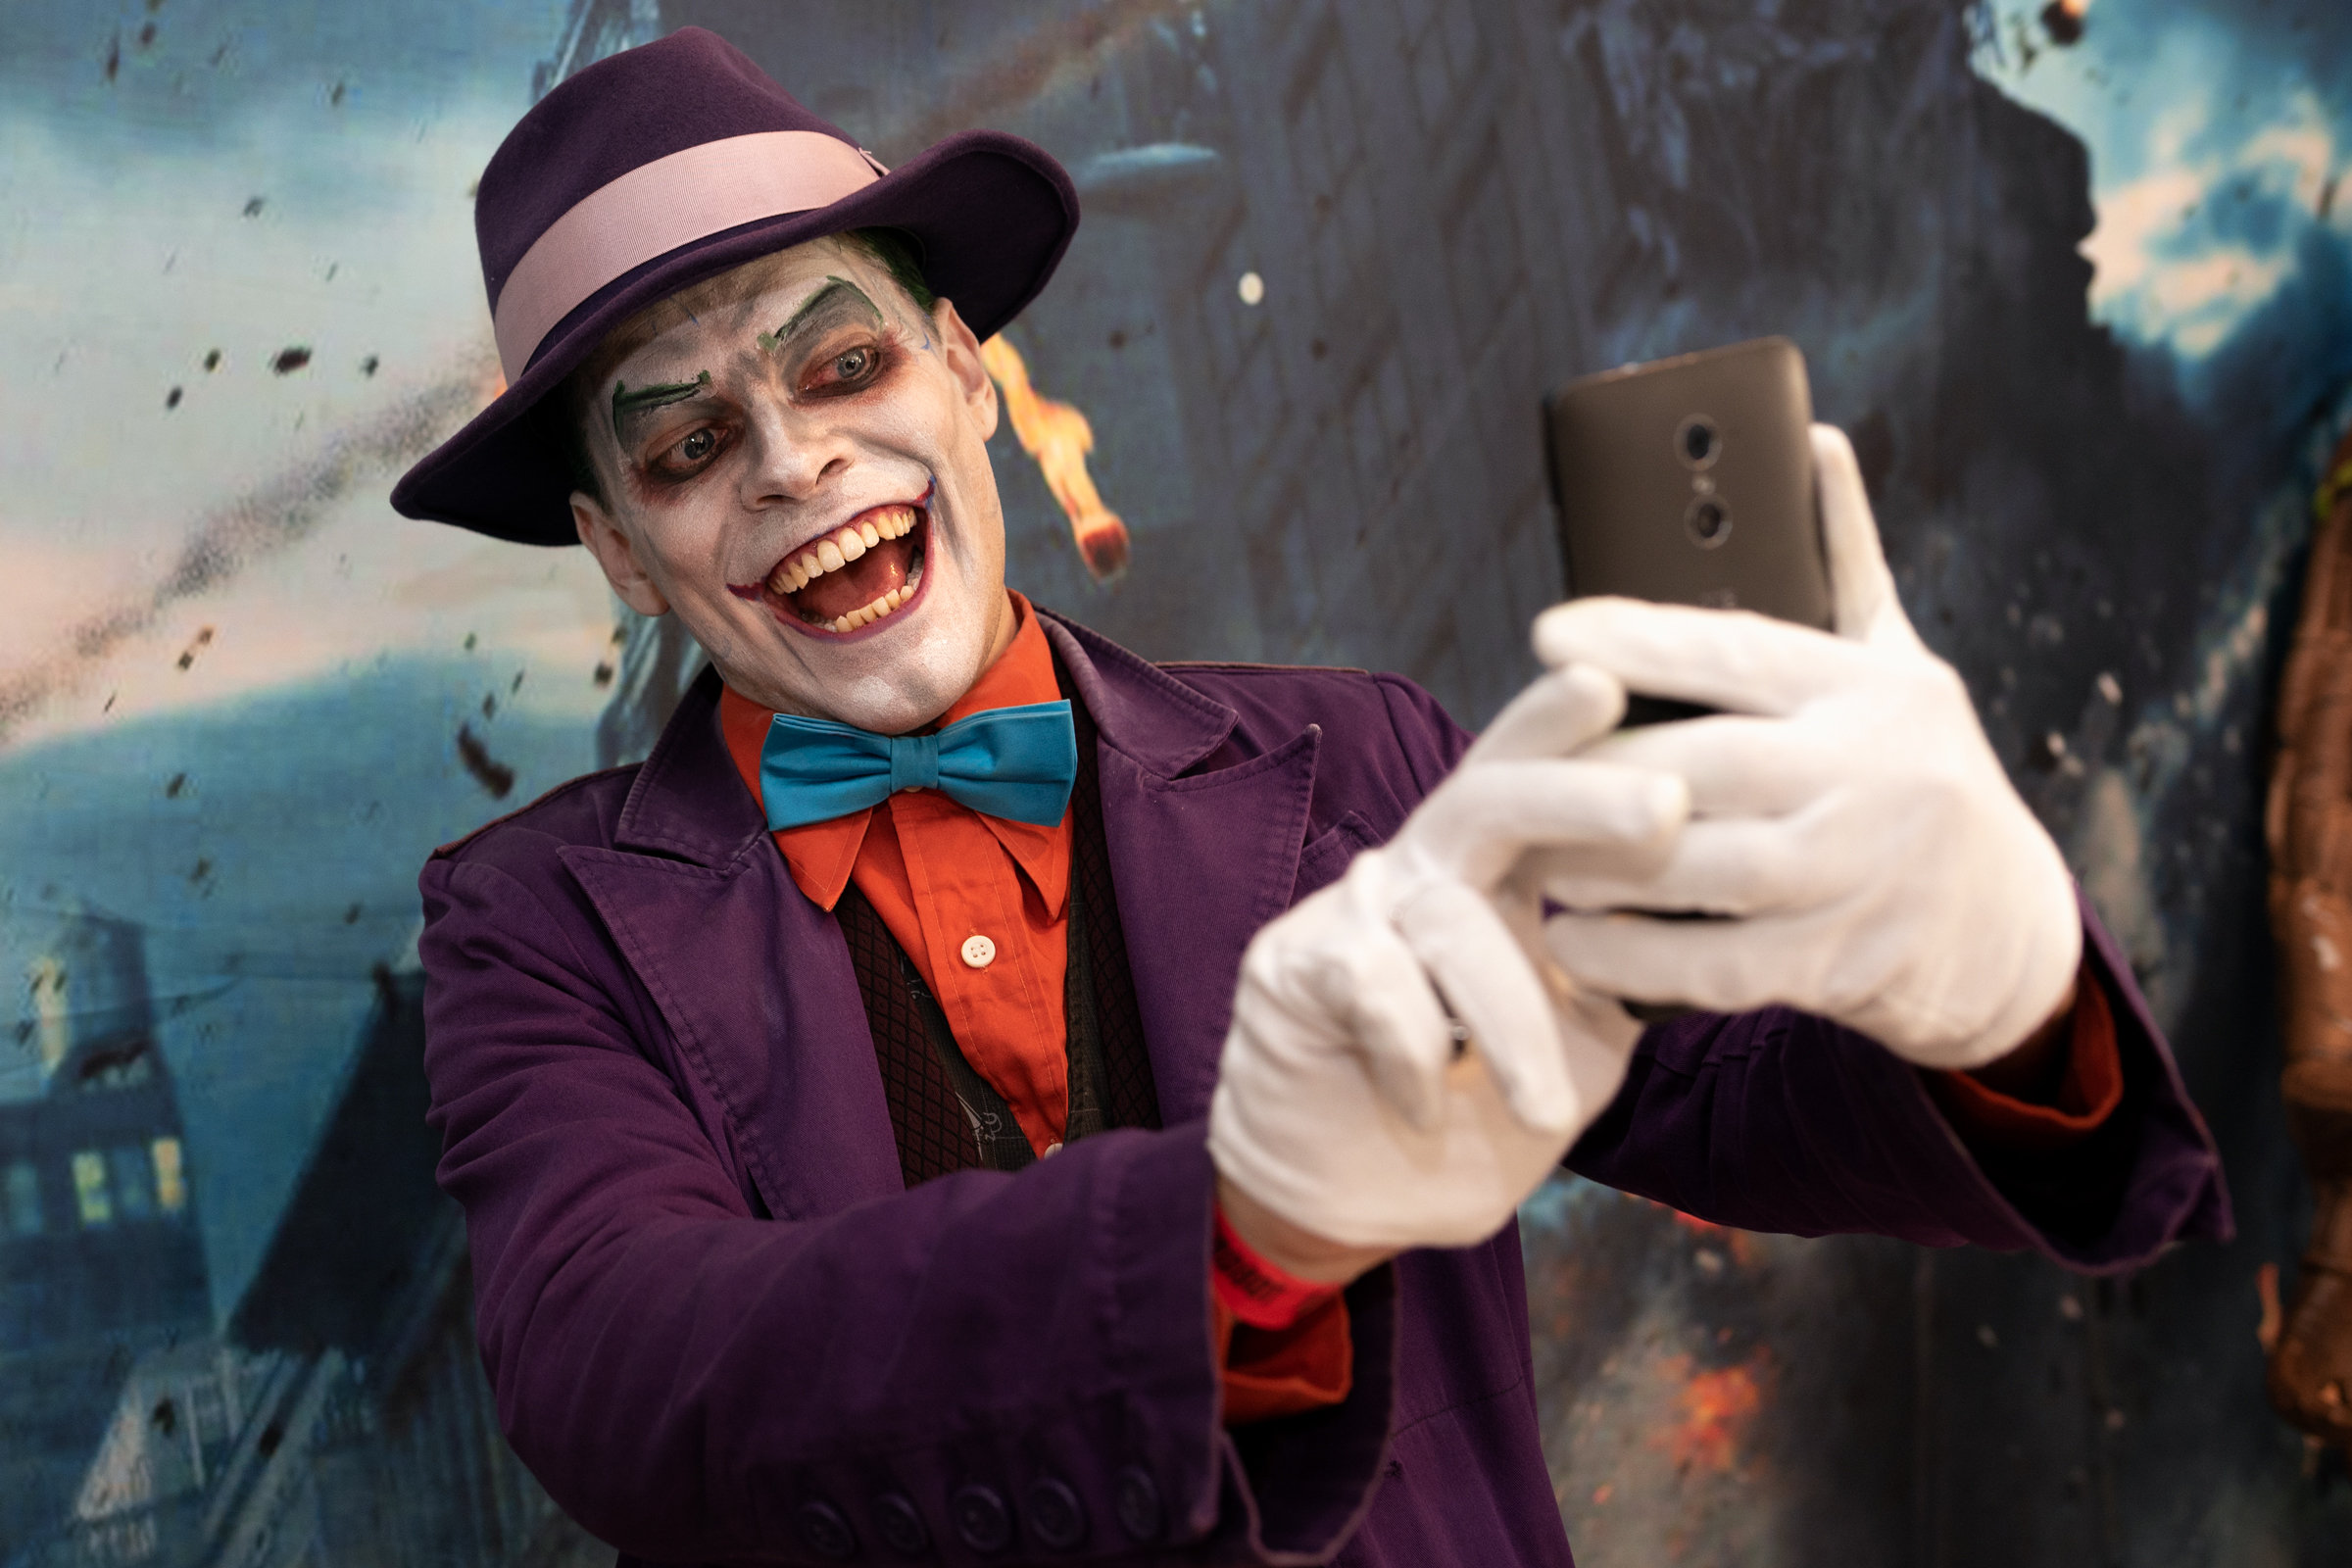 Cosplayer, Mark Dasinger Jr, as The Joker attends Nerdbot Con, a